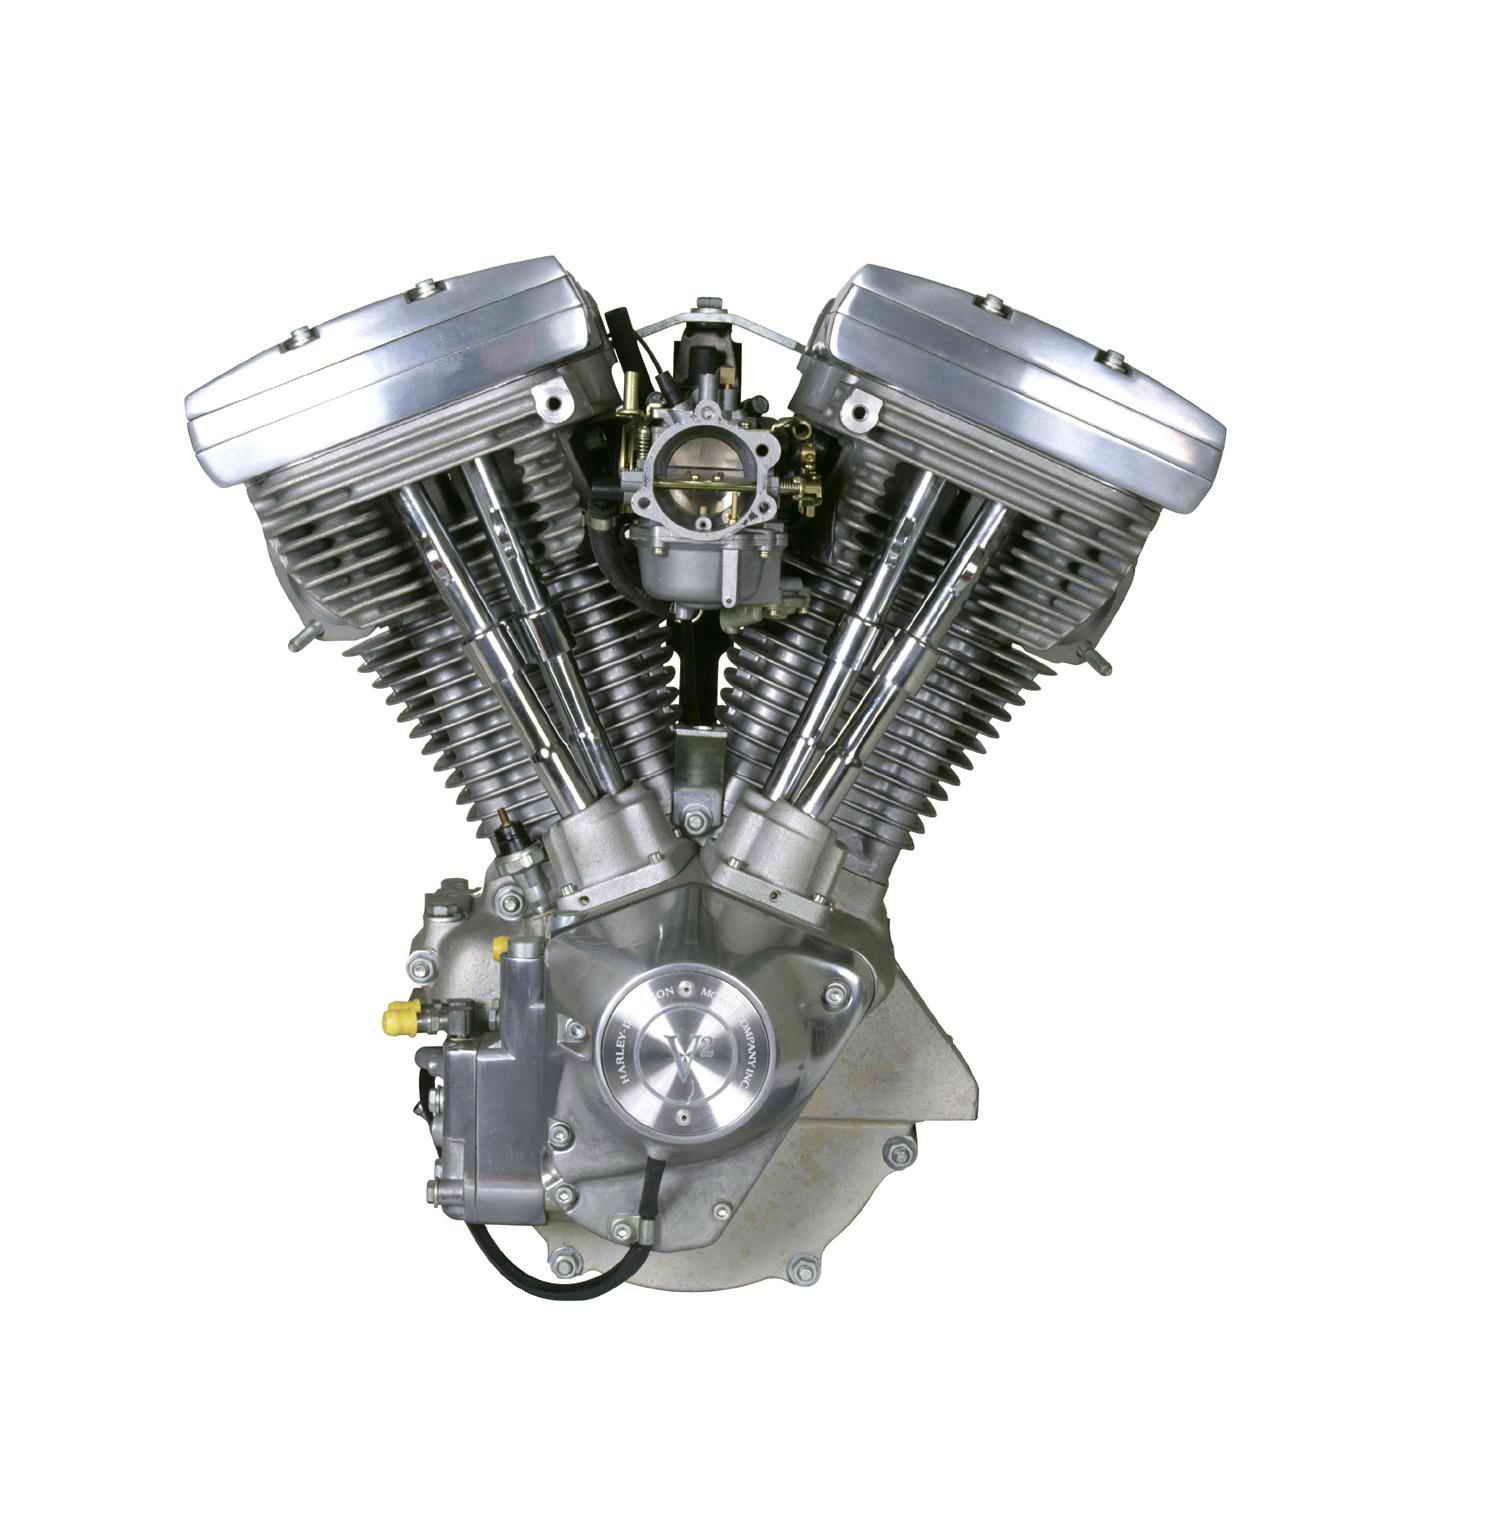 1984 - The 1340cc V2 Evolution engine